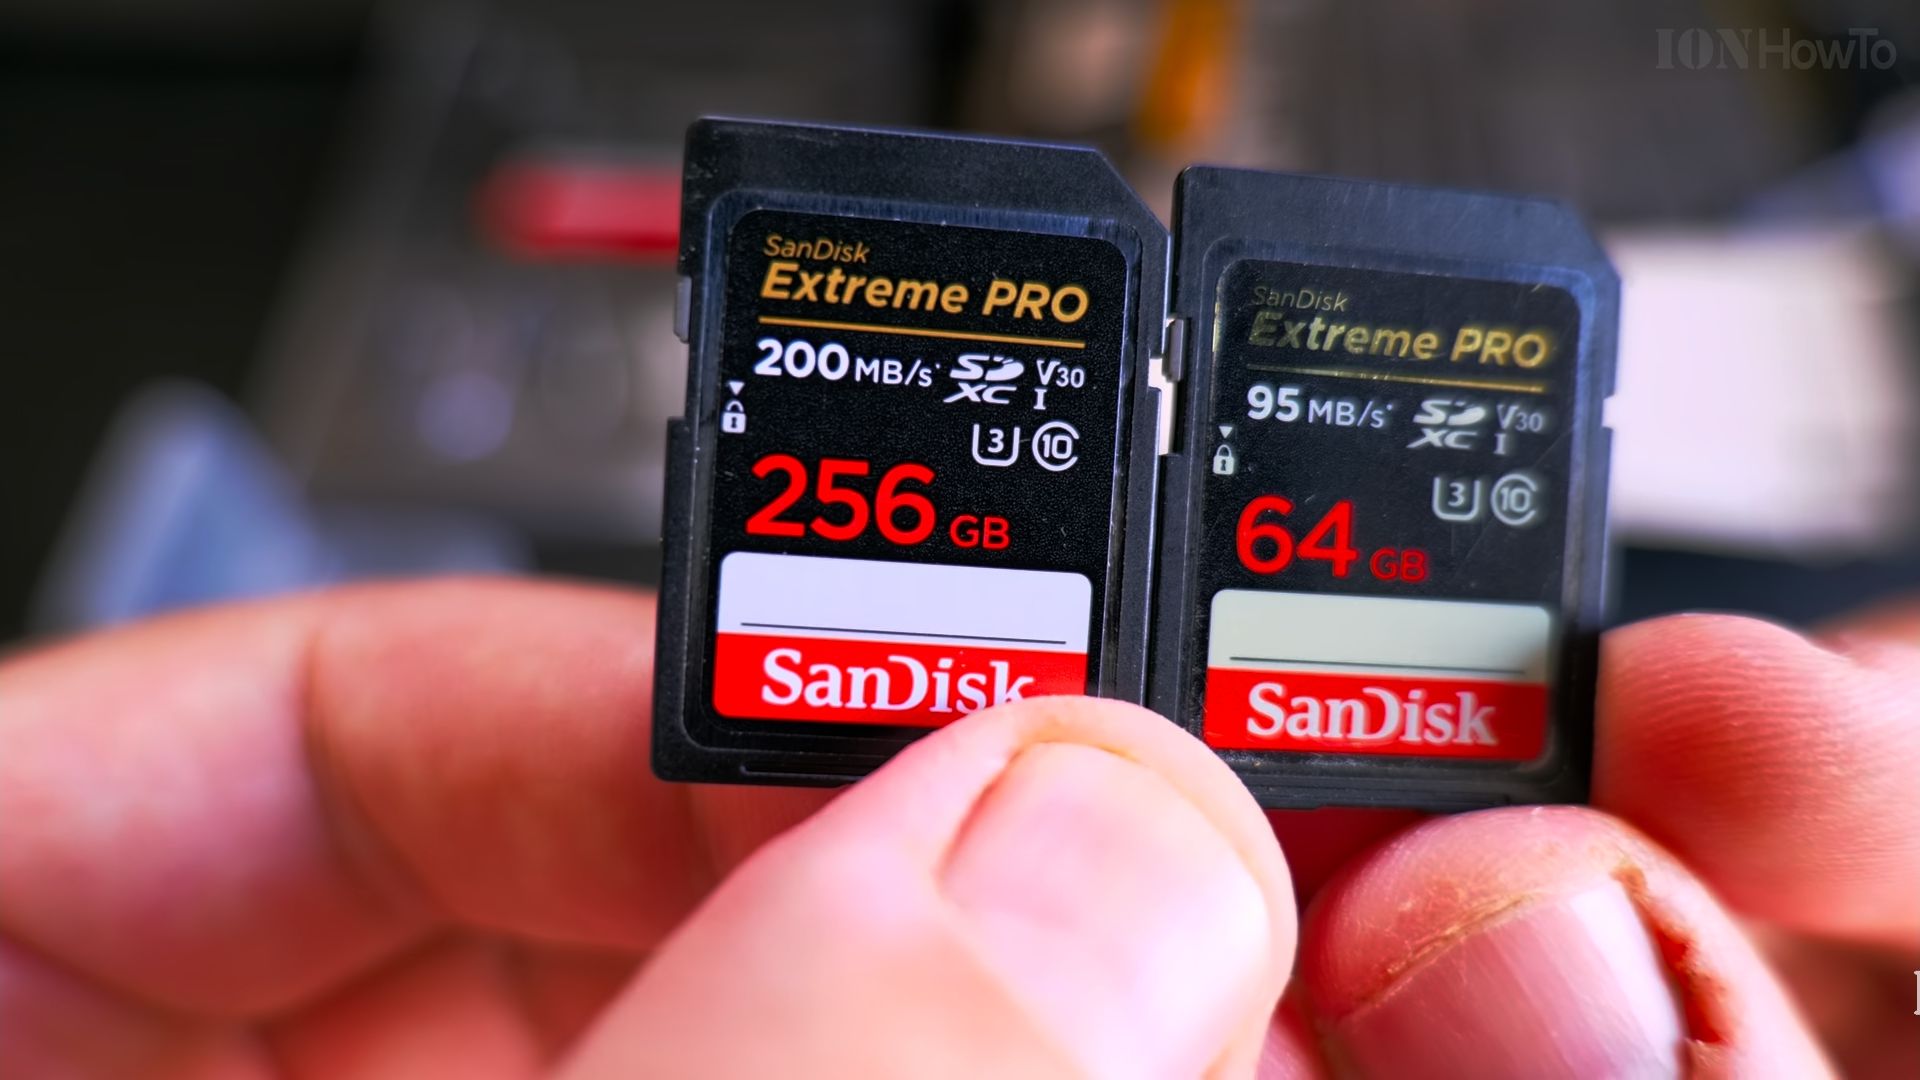 SanDisk Extreme Pro 200mb vs 95mb